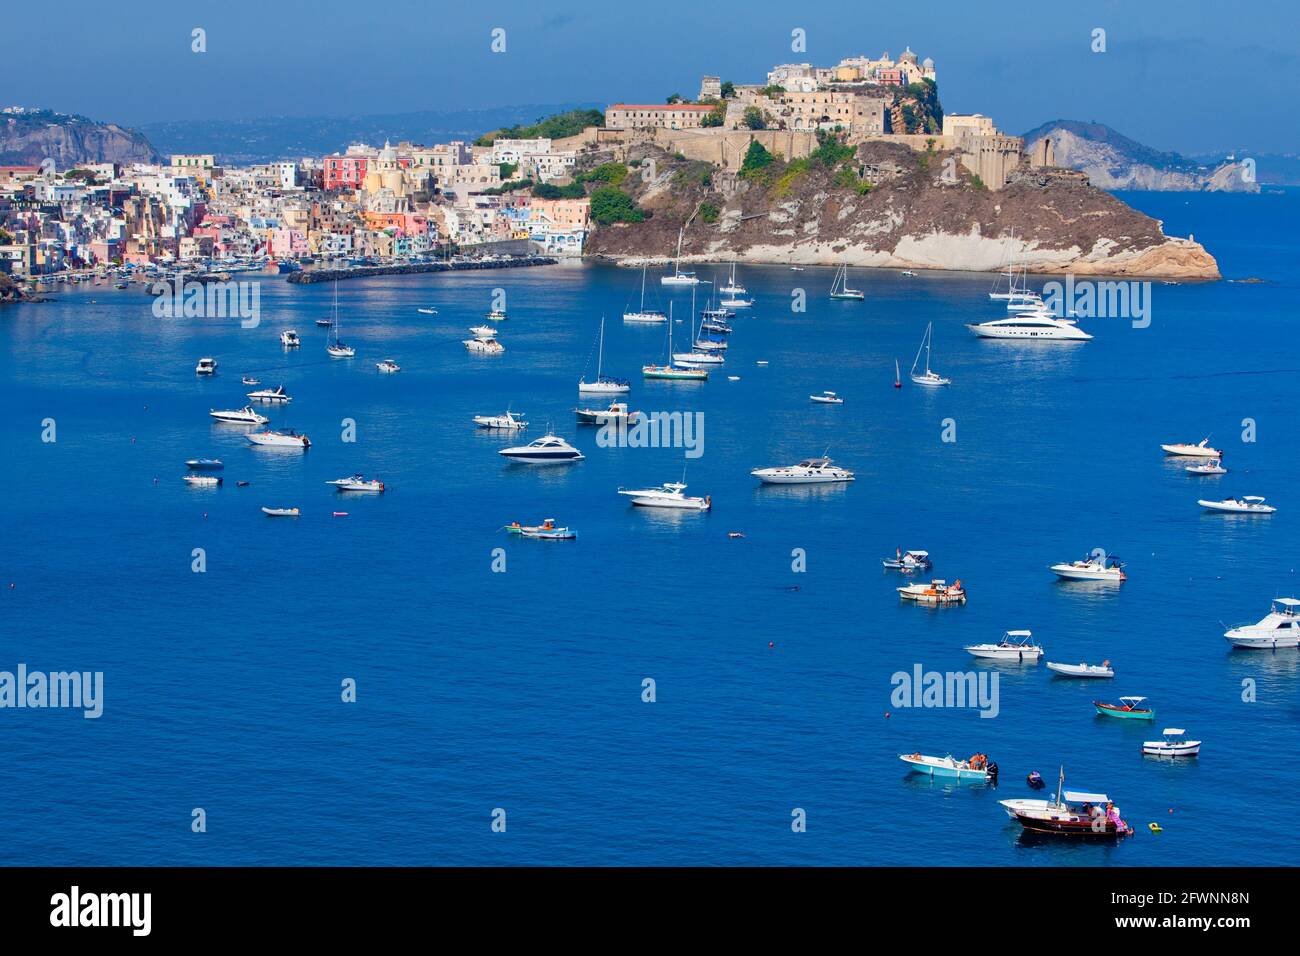 Marina Corricella, Procida Island, la Bahía de Nápoles, Campania, Italia Foto de stock